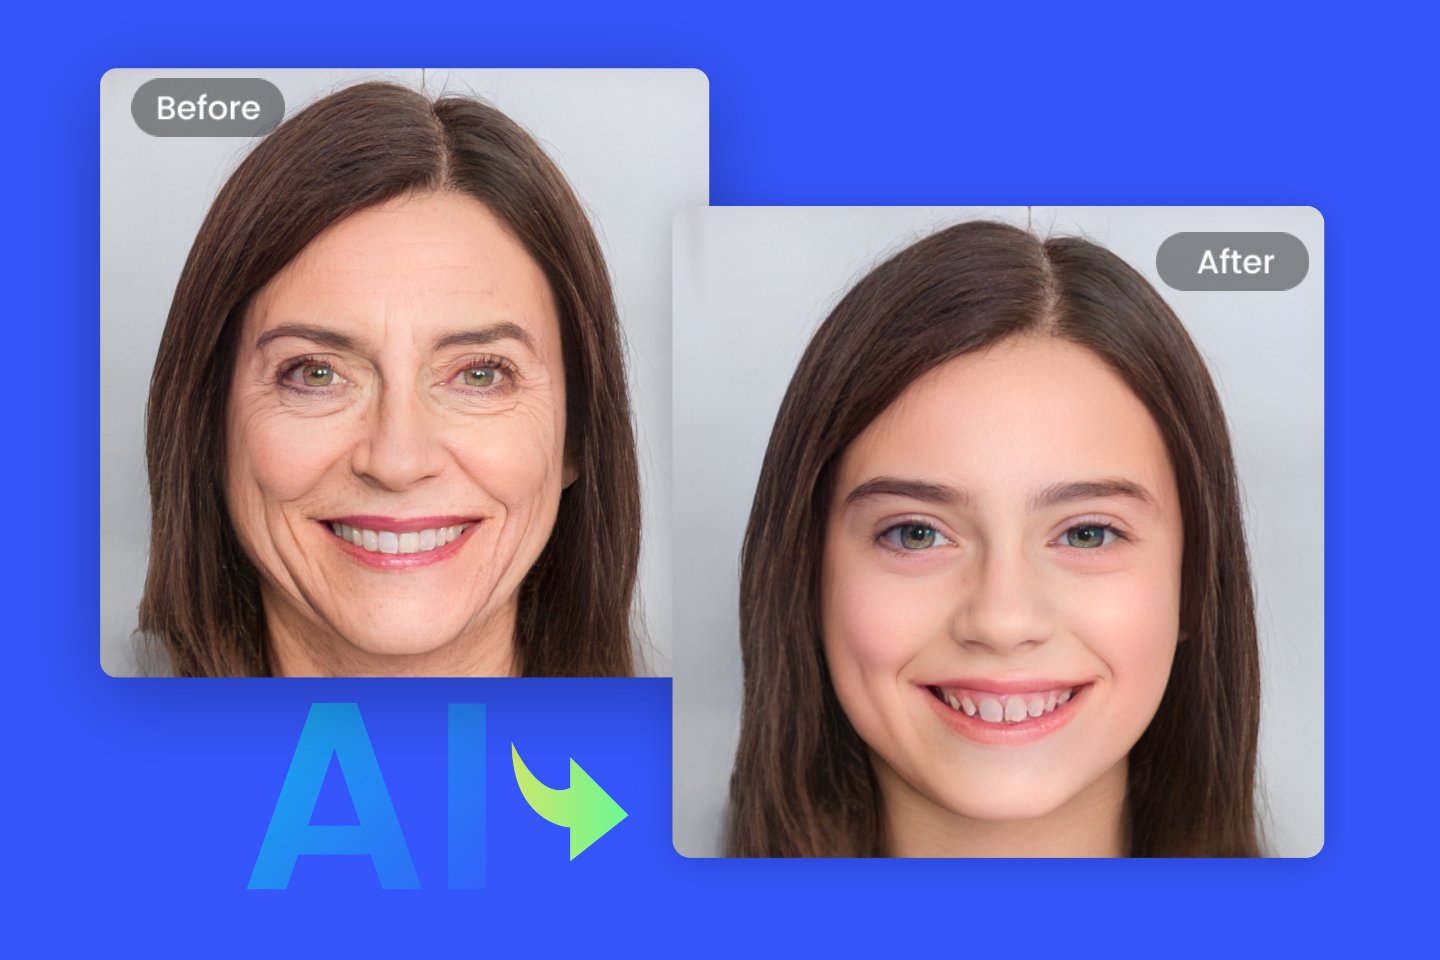 Gør det ældre kvindelige ansigt til teenage -ansigt ved hjælp af Fotor Online Teenage Filter